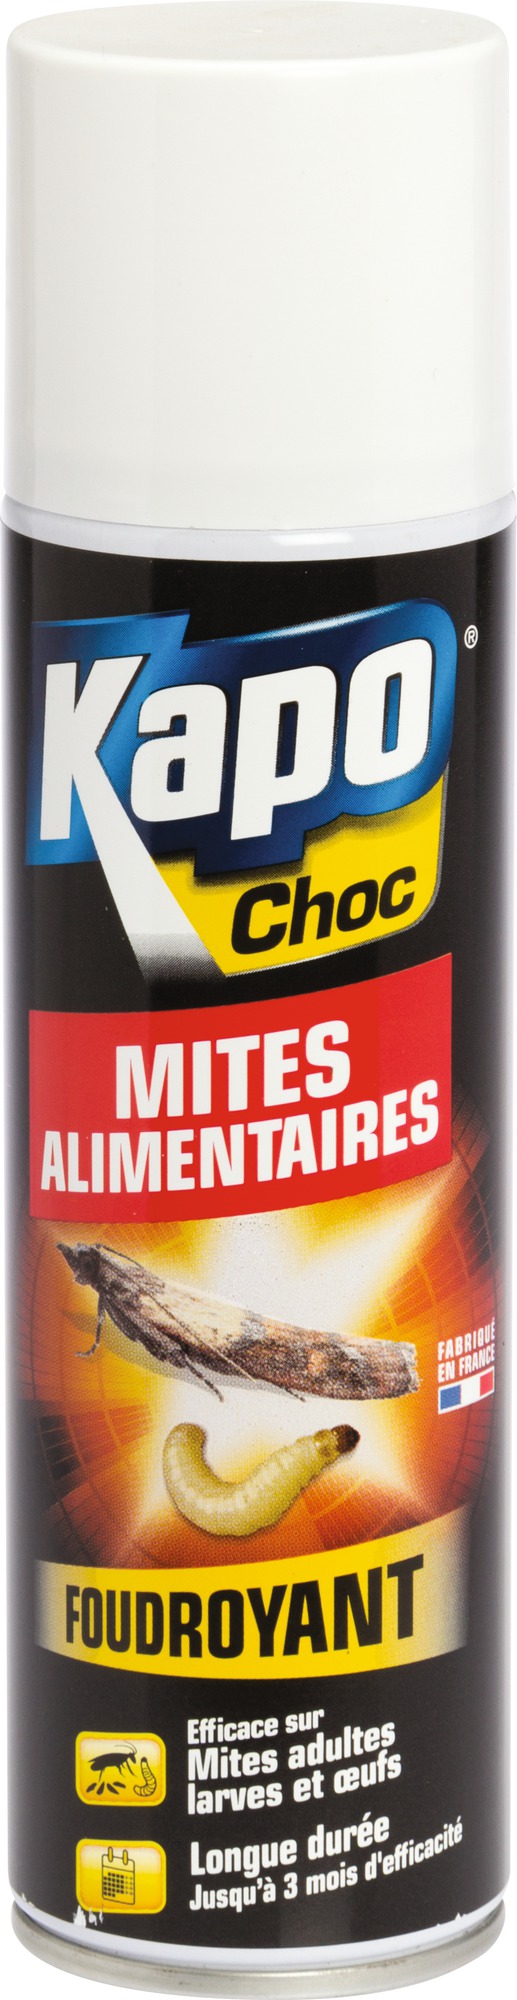 Mites alimentaires Kapo Choc - Foudroyant